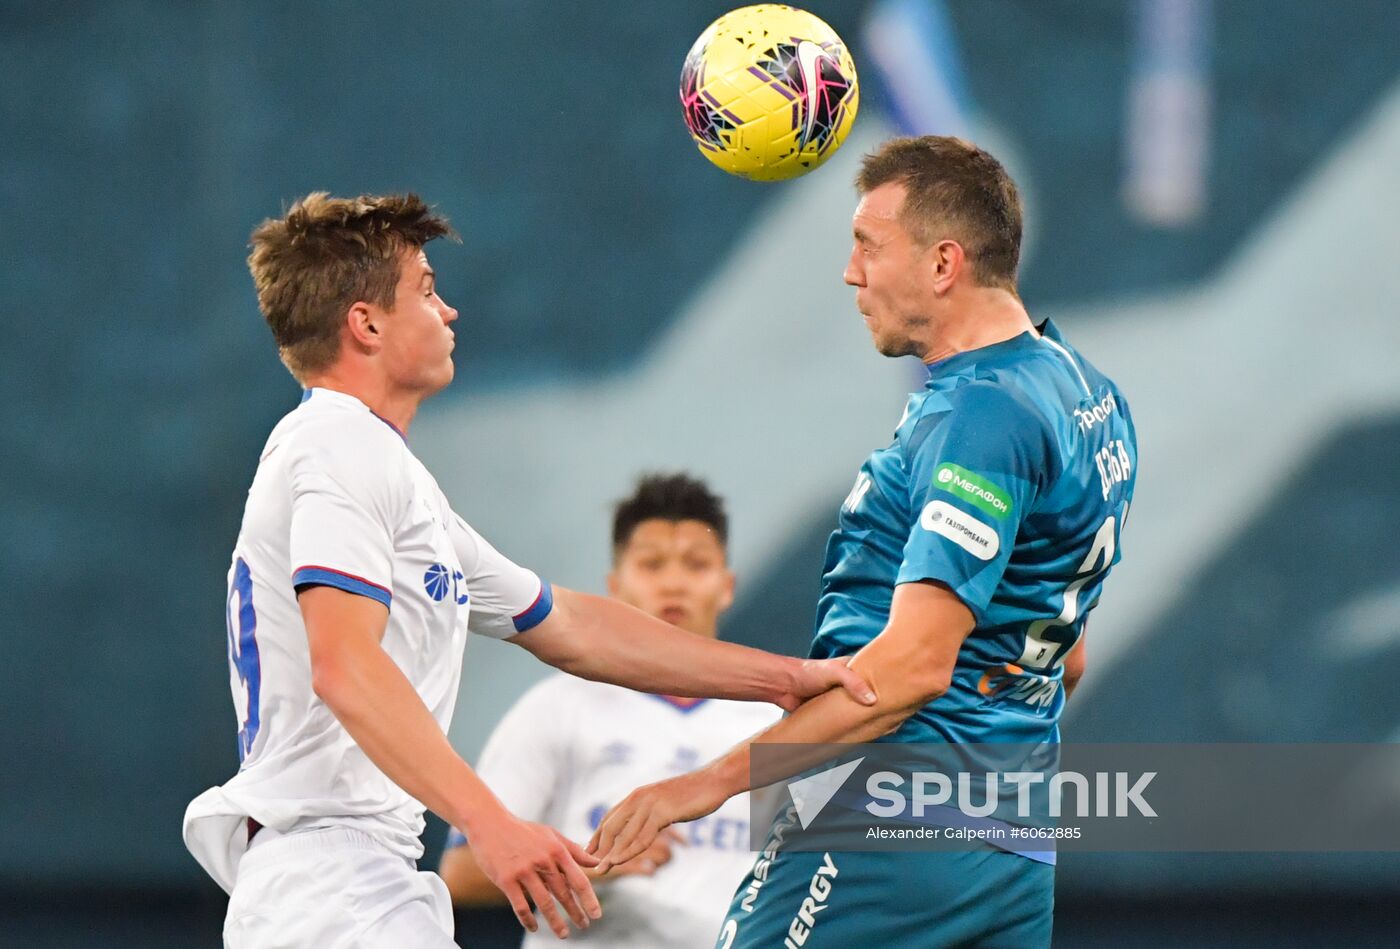 Russia Soccer Cup Zenit - CSKA